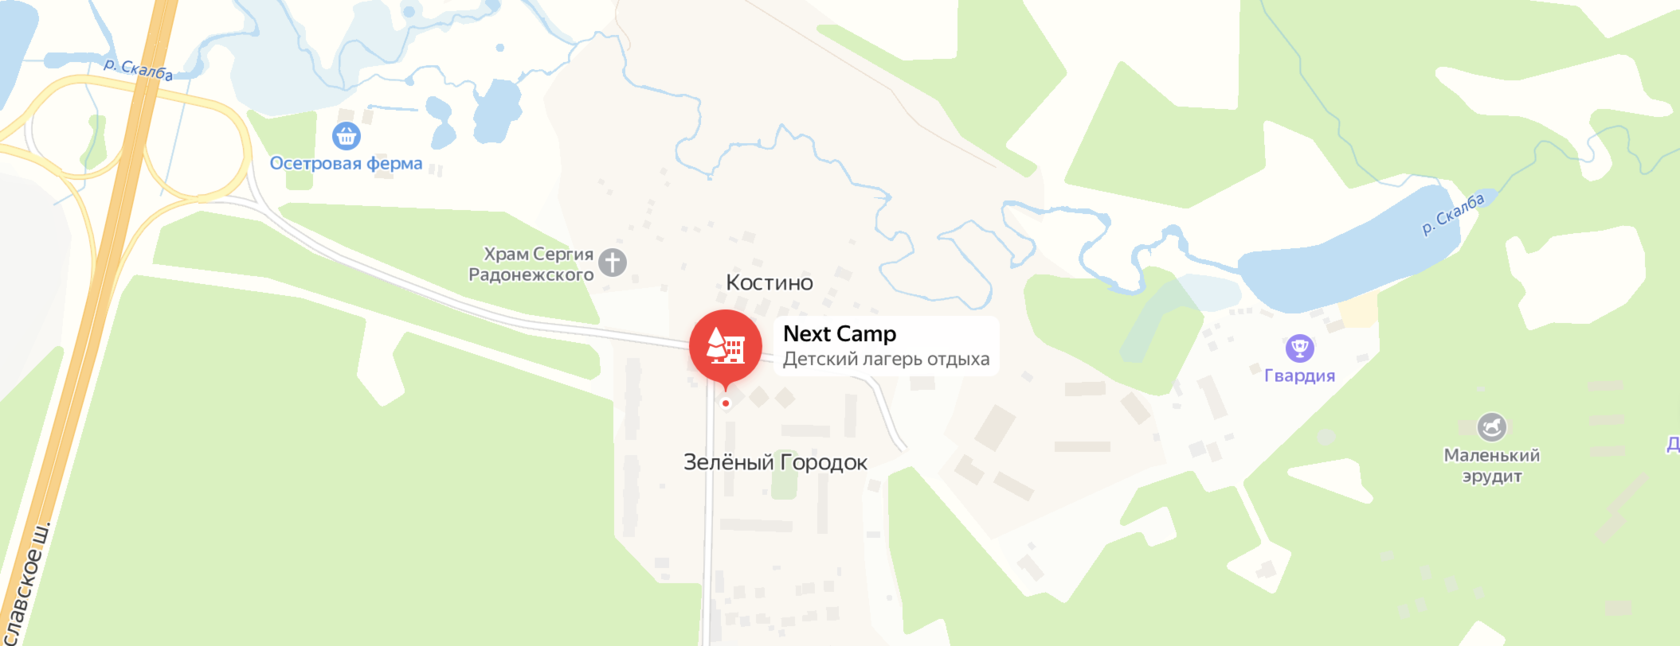 Карта проезда в детский лагерь Next Camp в Зелёном городке